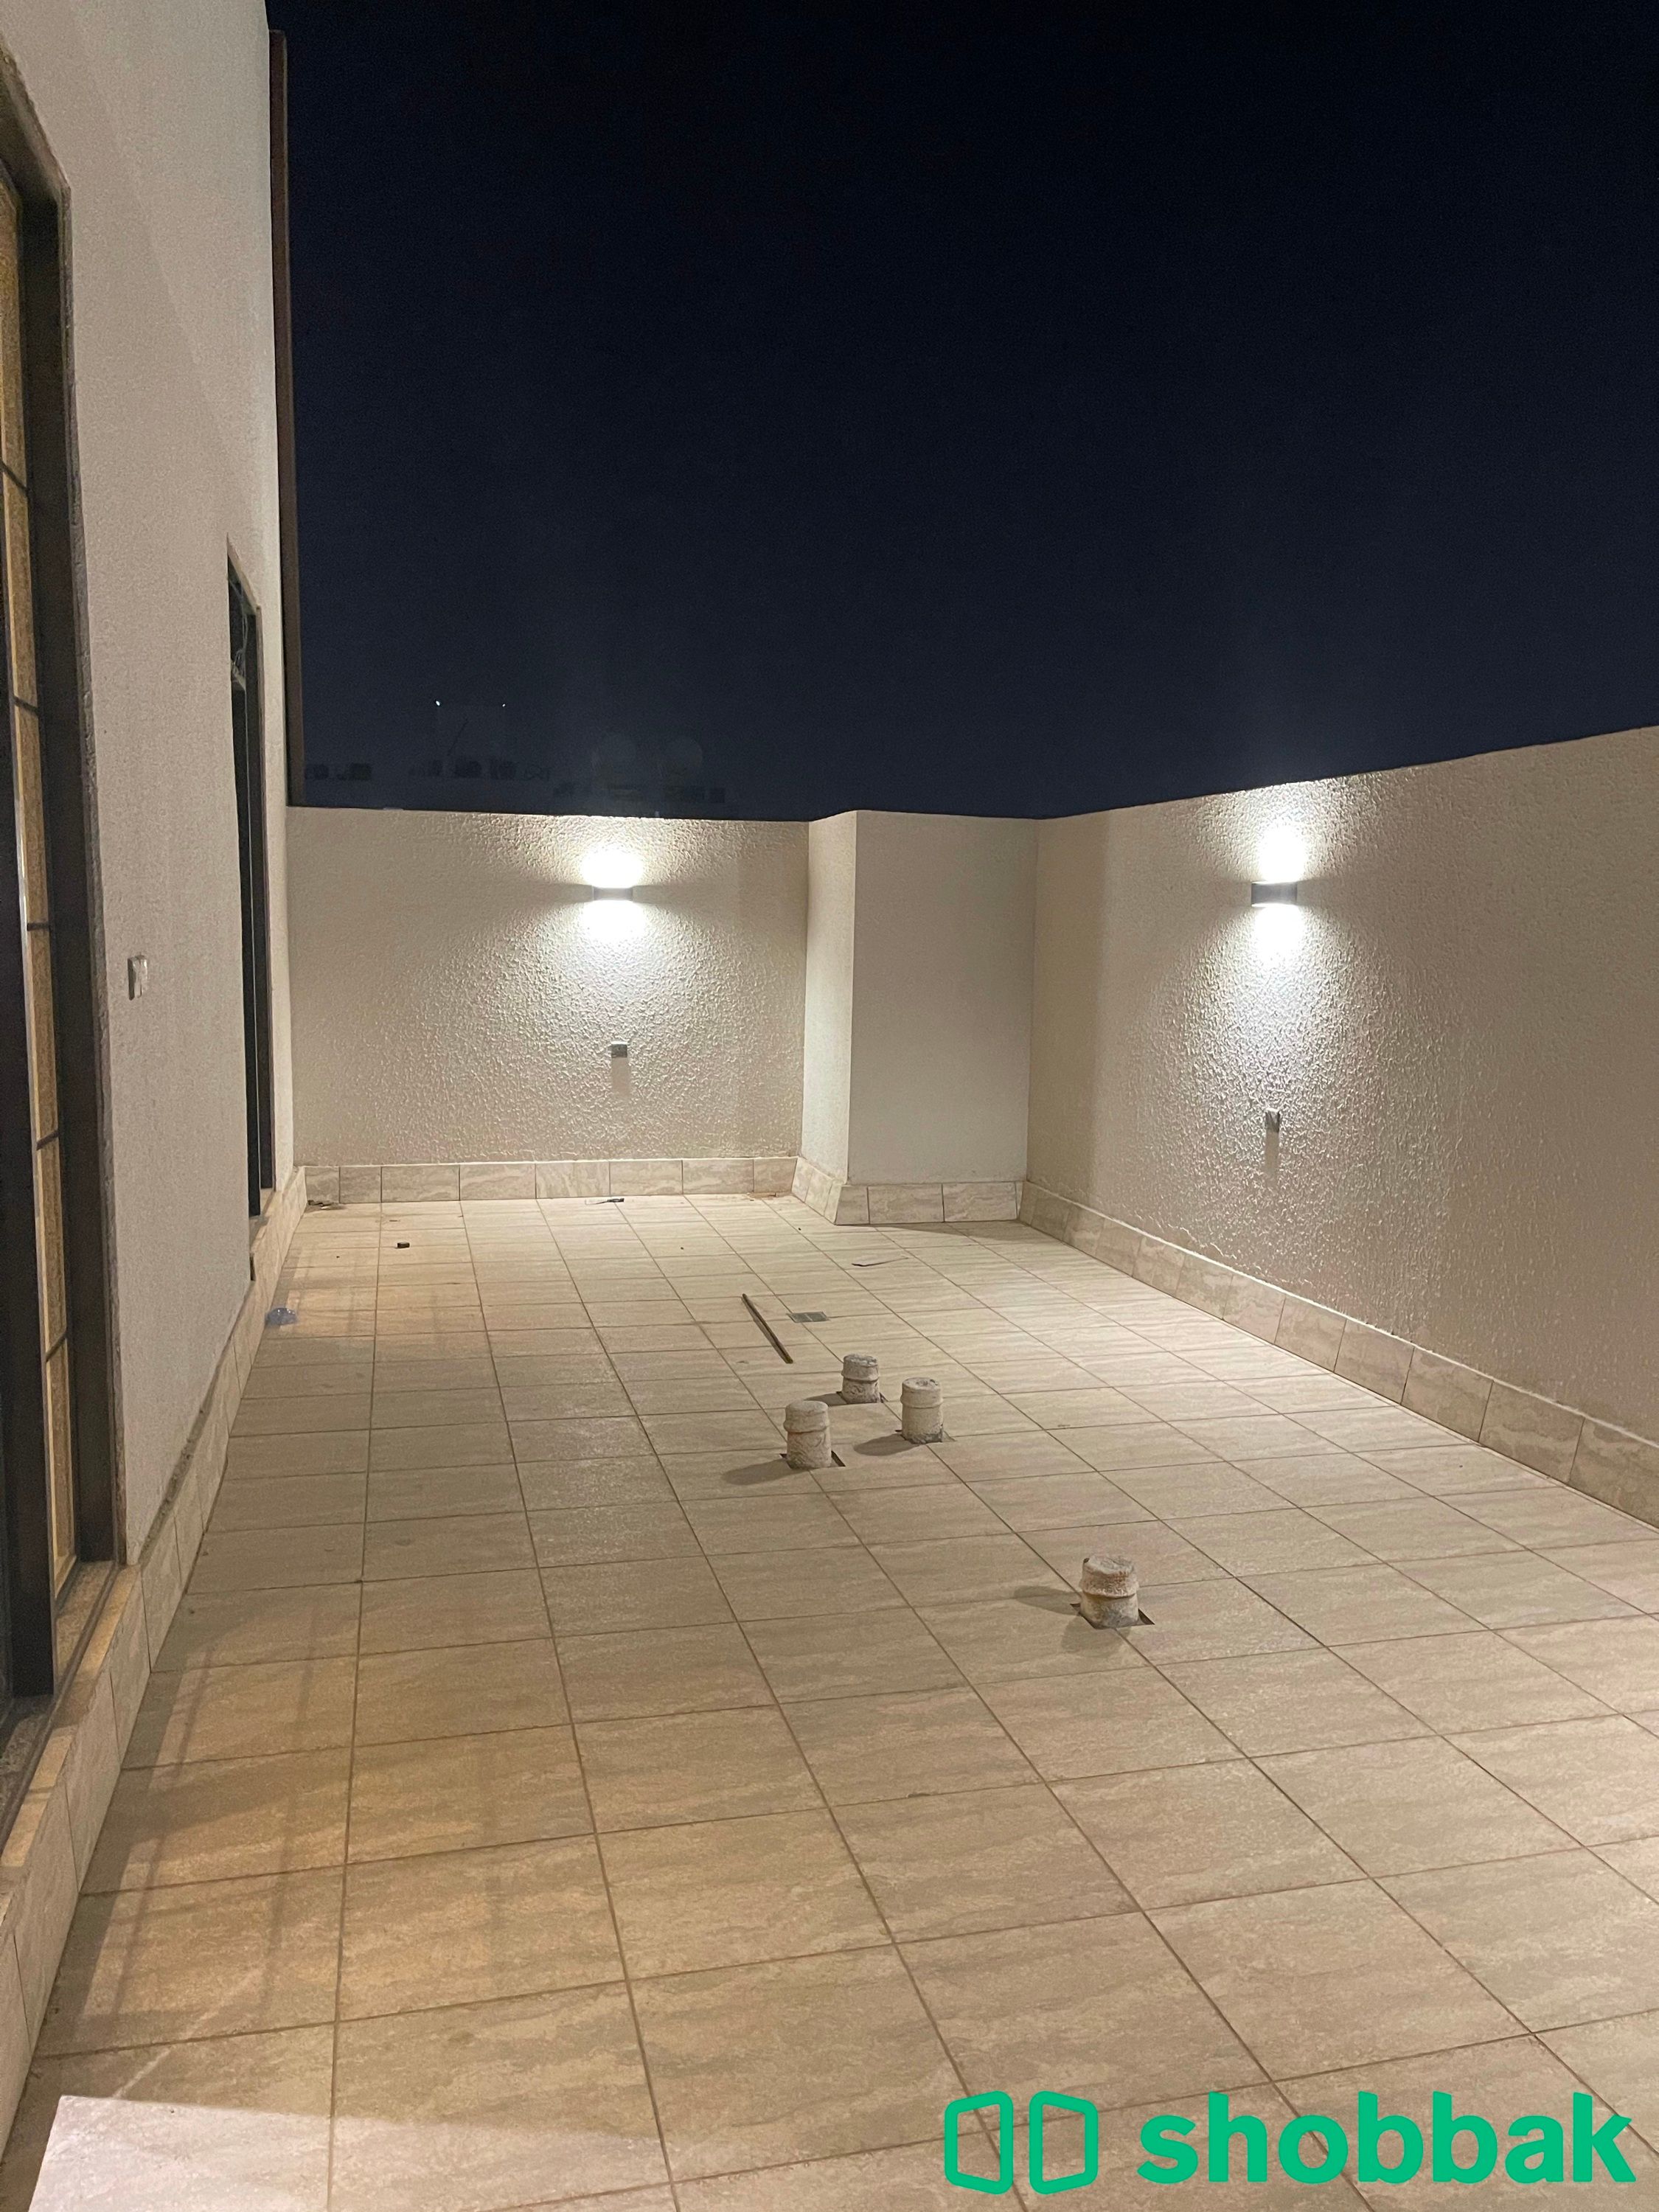 شقة رقم ( A9 ) للبيع - الرياض - حي غرناطة  Shobbak Saudi Arabia